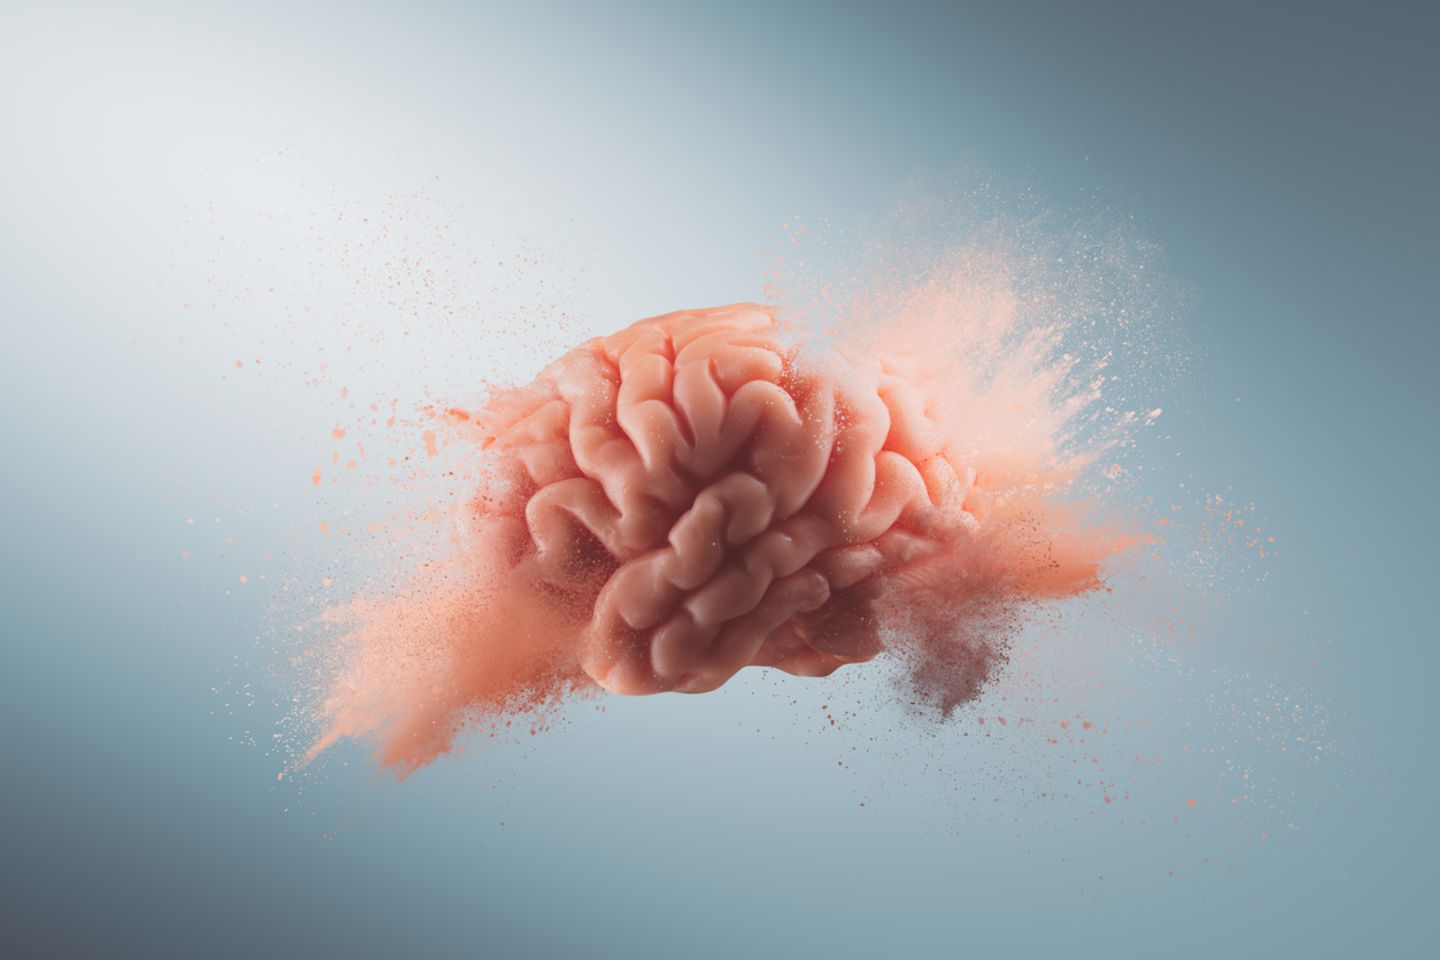 Das passiert in deinem Gehirn beim Orgasmus: Gehirn explodiert